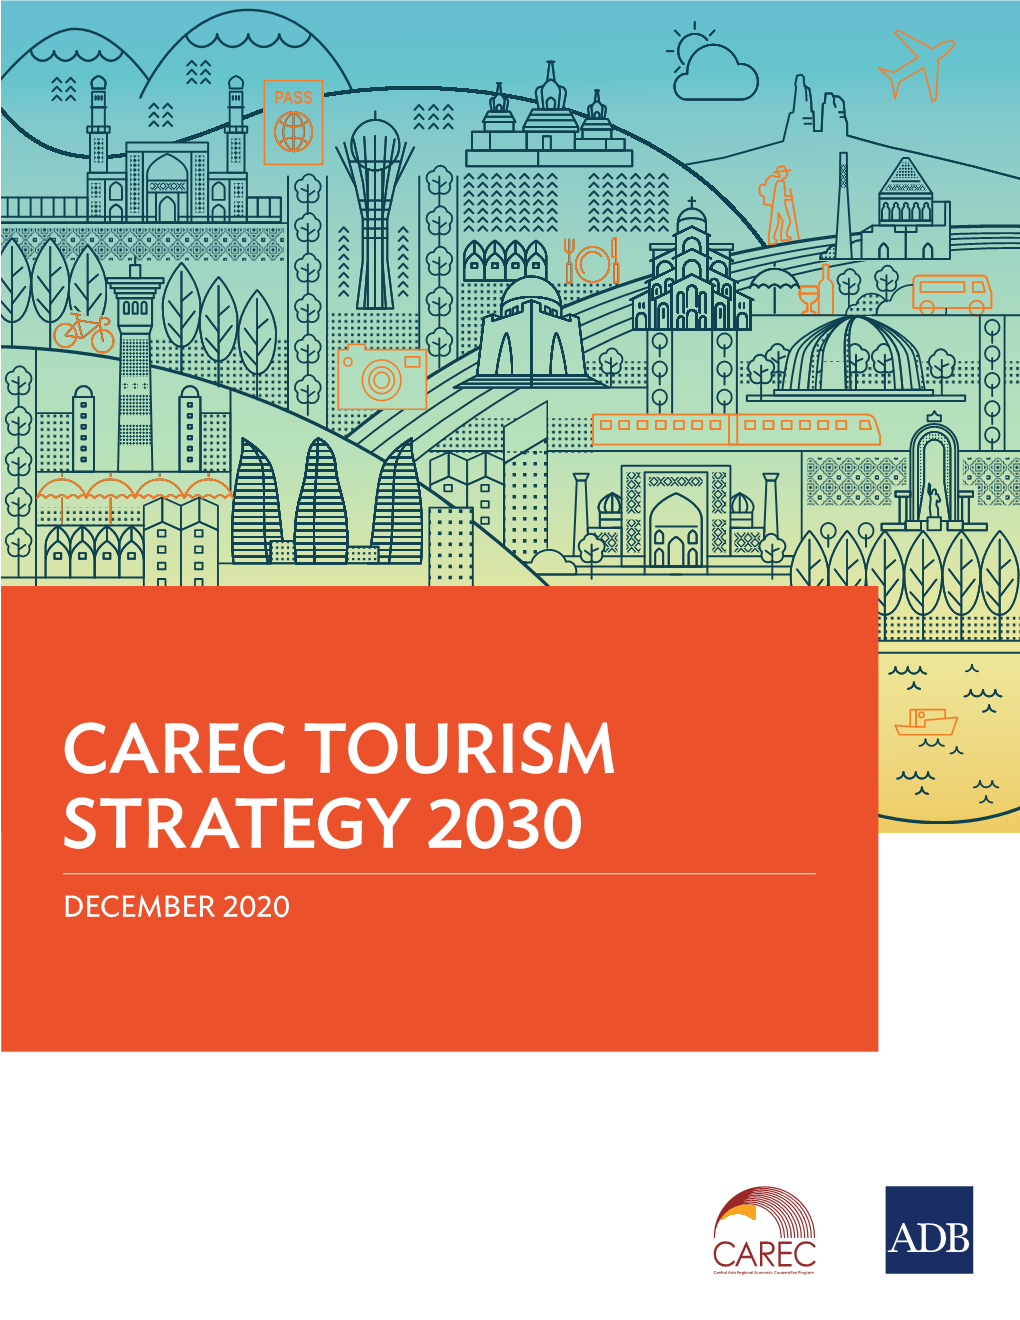 CAREC TOURISM STRATEGY 2030 DECEMBER 2020 Creative Commons Attribution 3.0 IGO License (CC by 3.0 IGO)